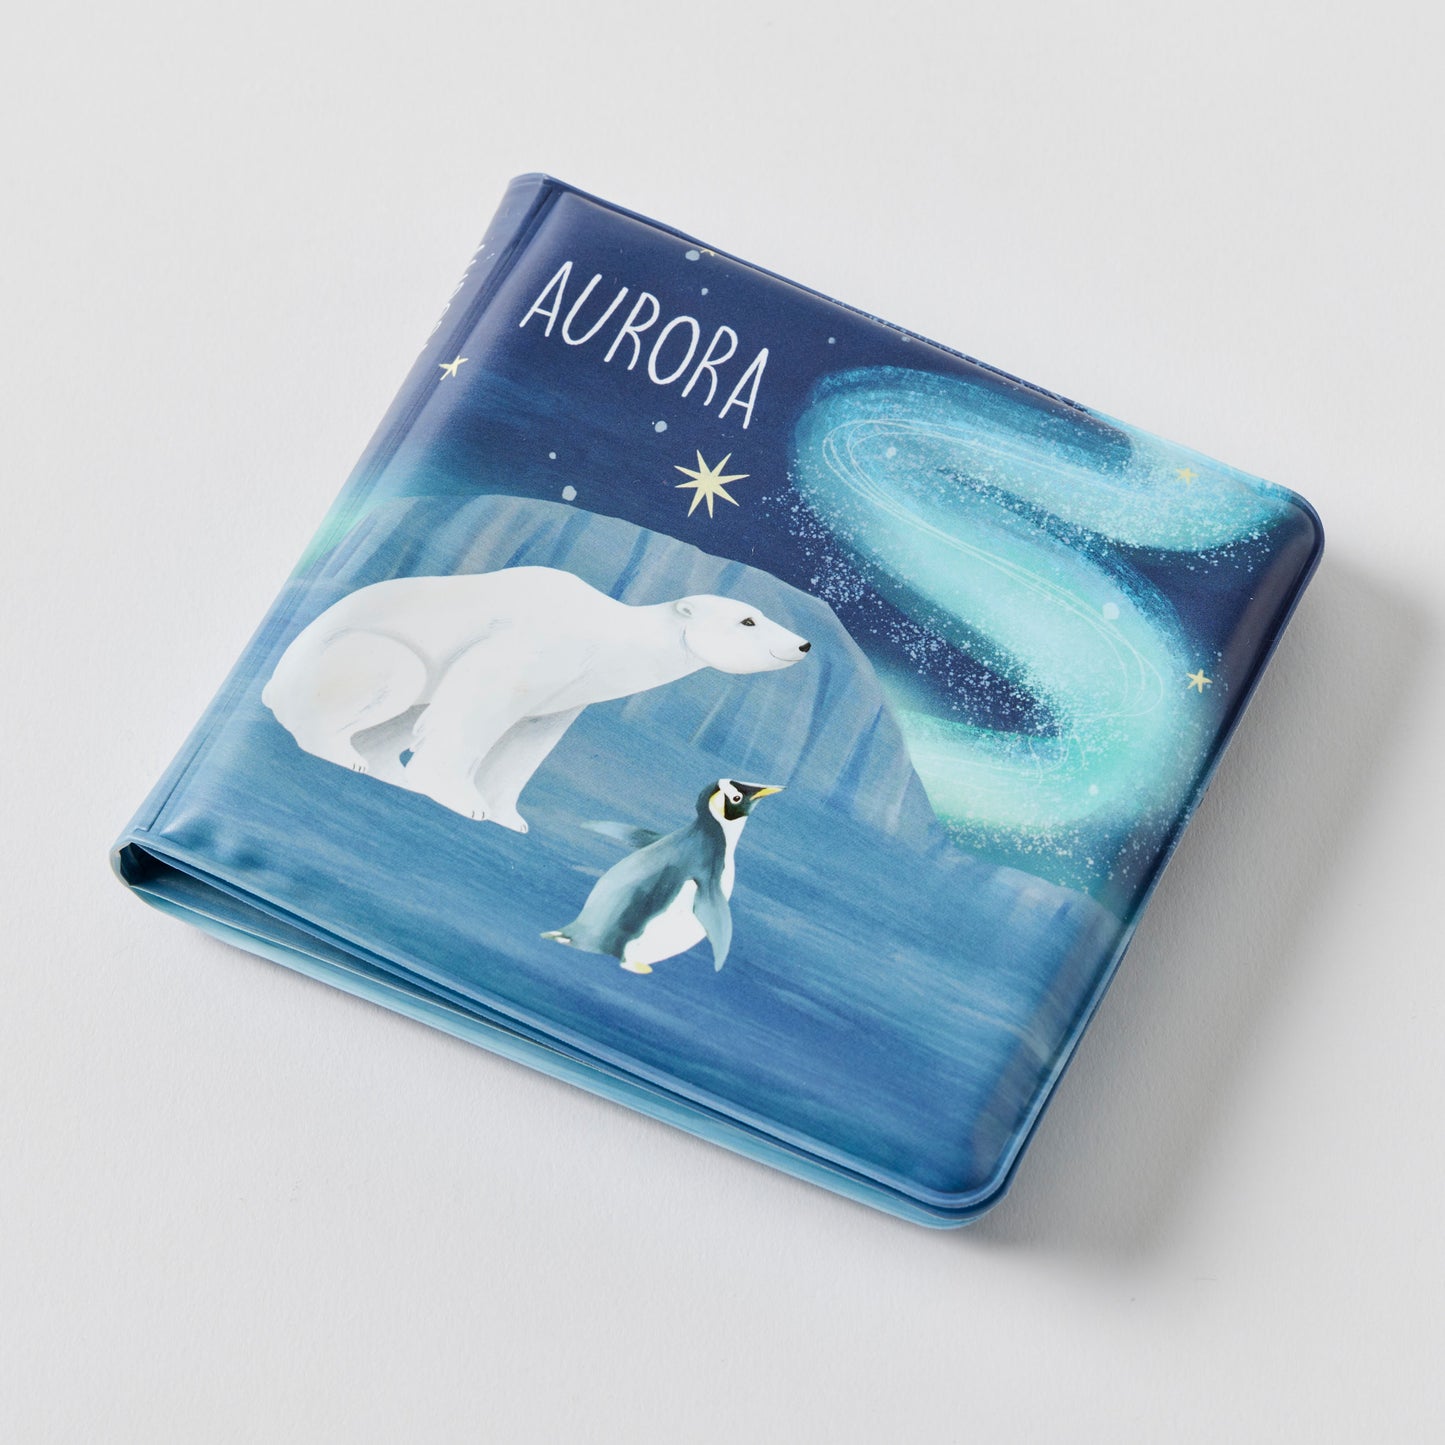 Aurora Bath Book